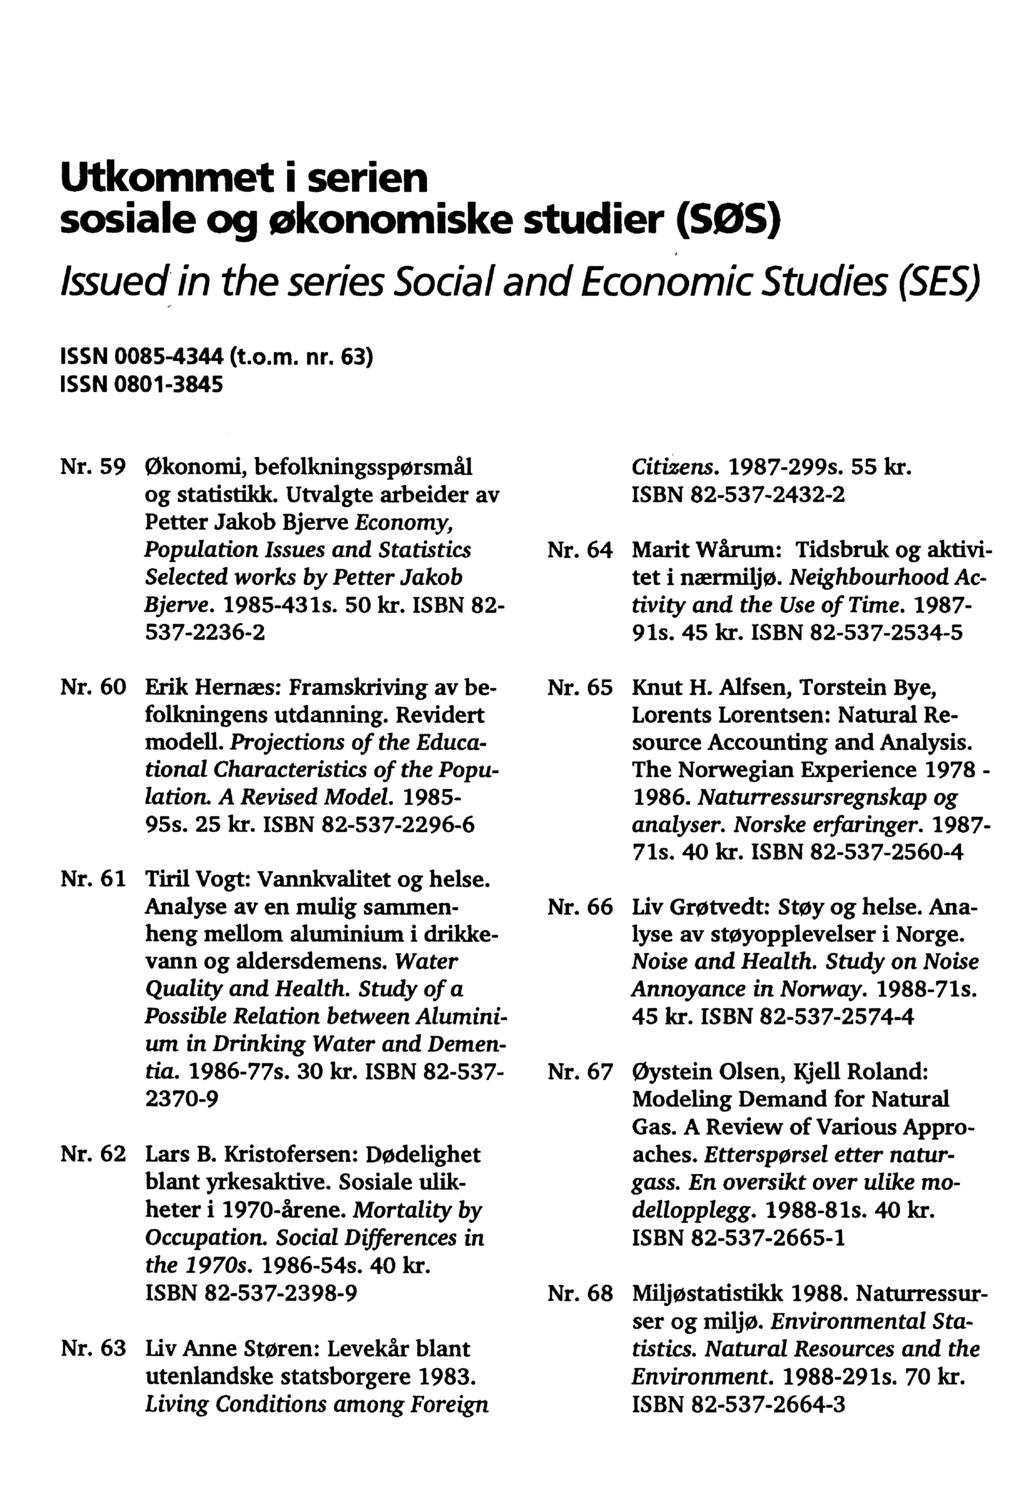 Utkommet i serien sosiale og økonomiske studier (SOS) Issued in the series Social and Economic Studies (SES) ISSN 0085-4344 (t.o.m. nr. 63) ISSN 0801-3845 Nr.